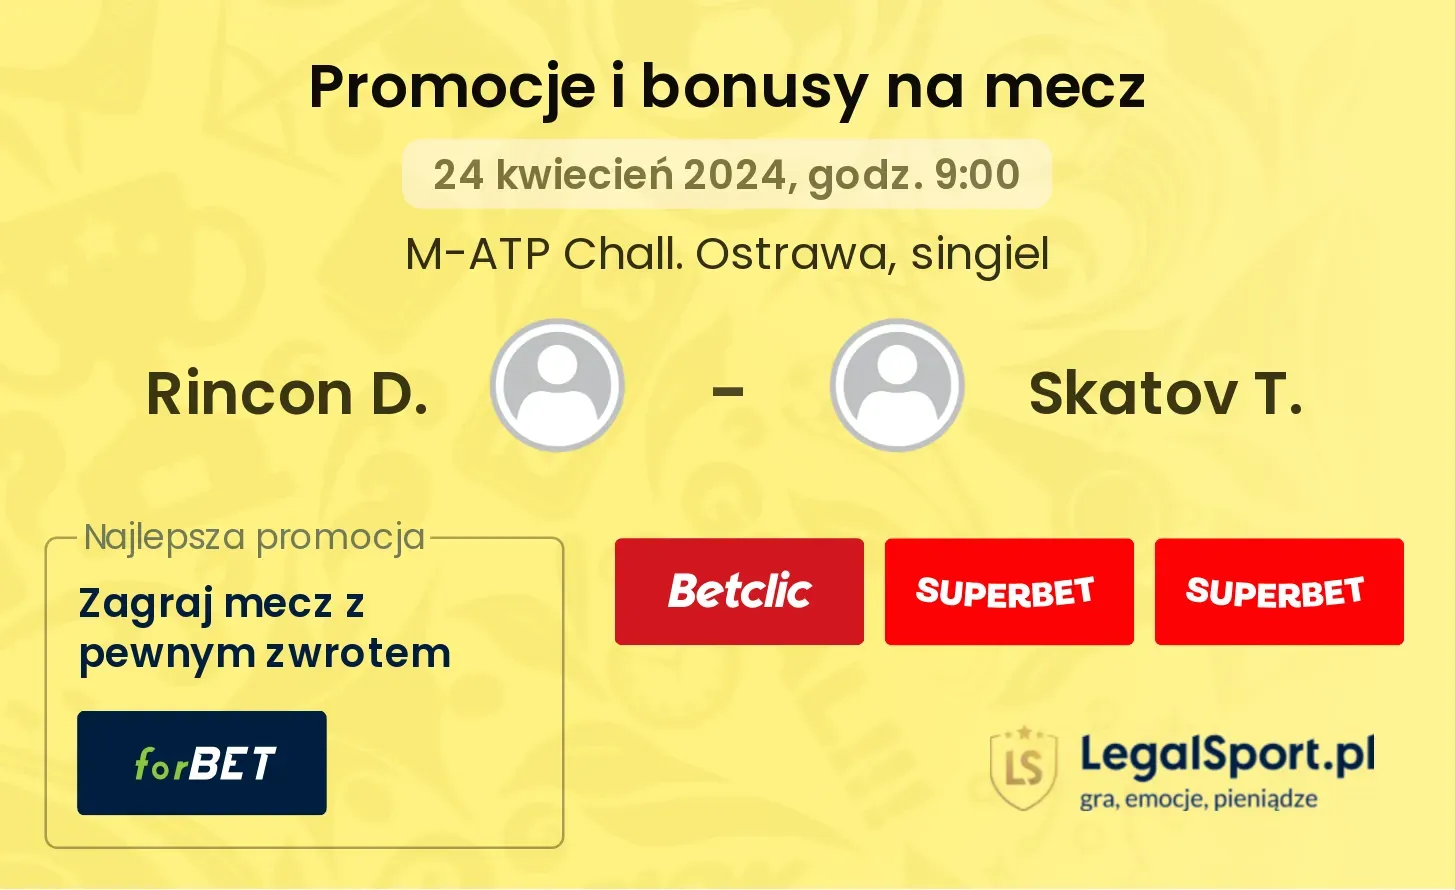 Rincon D. - Skatov T. promocje bonusy na mecz